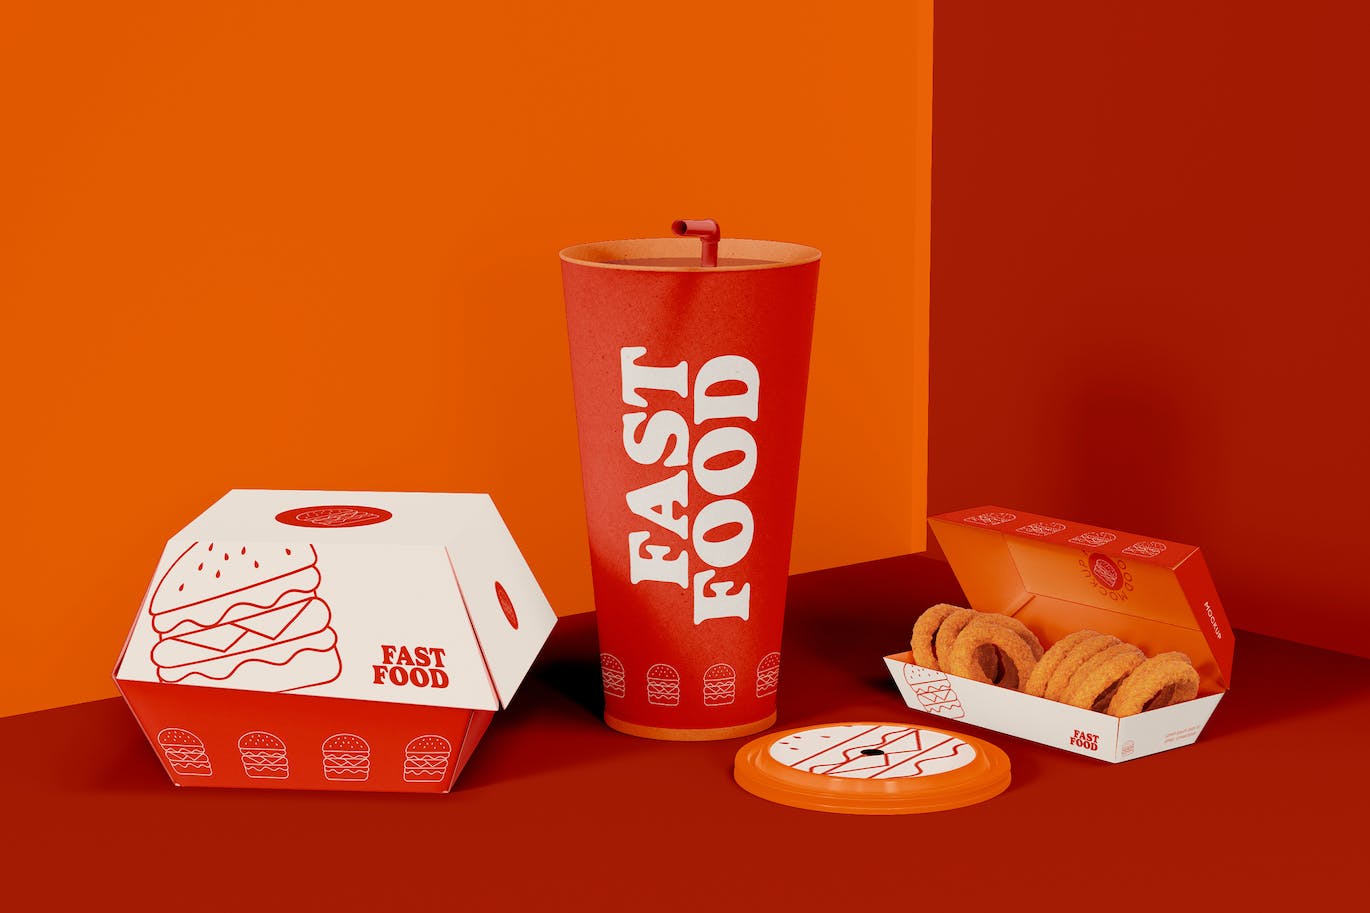 西式快餐盒装包装设计样机图 Fast Food Box Set Mockup 样机素材 第1张